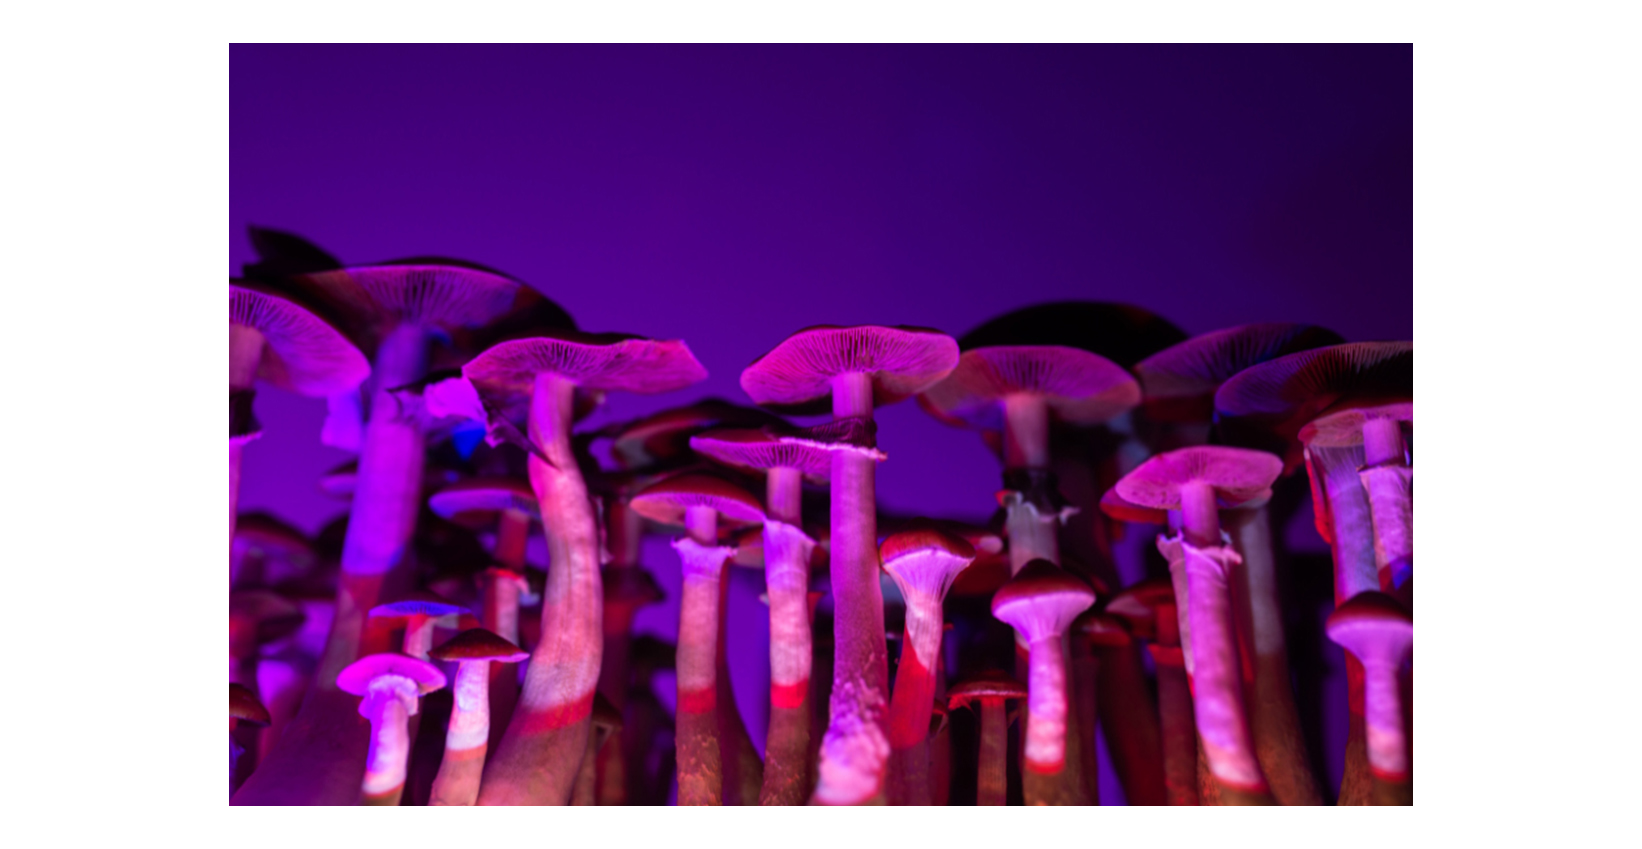 psilocybin mushrooms in a purple light